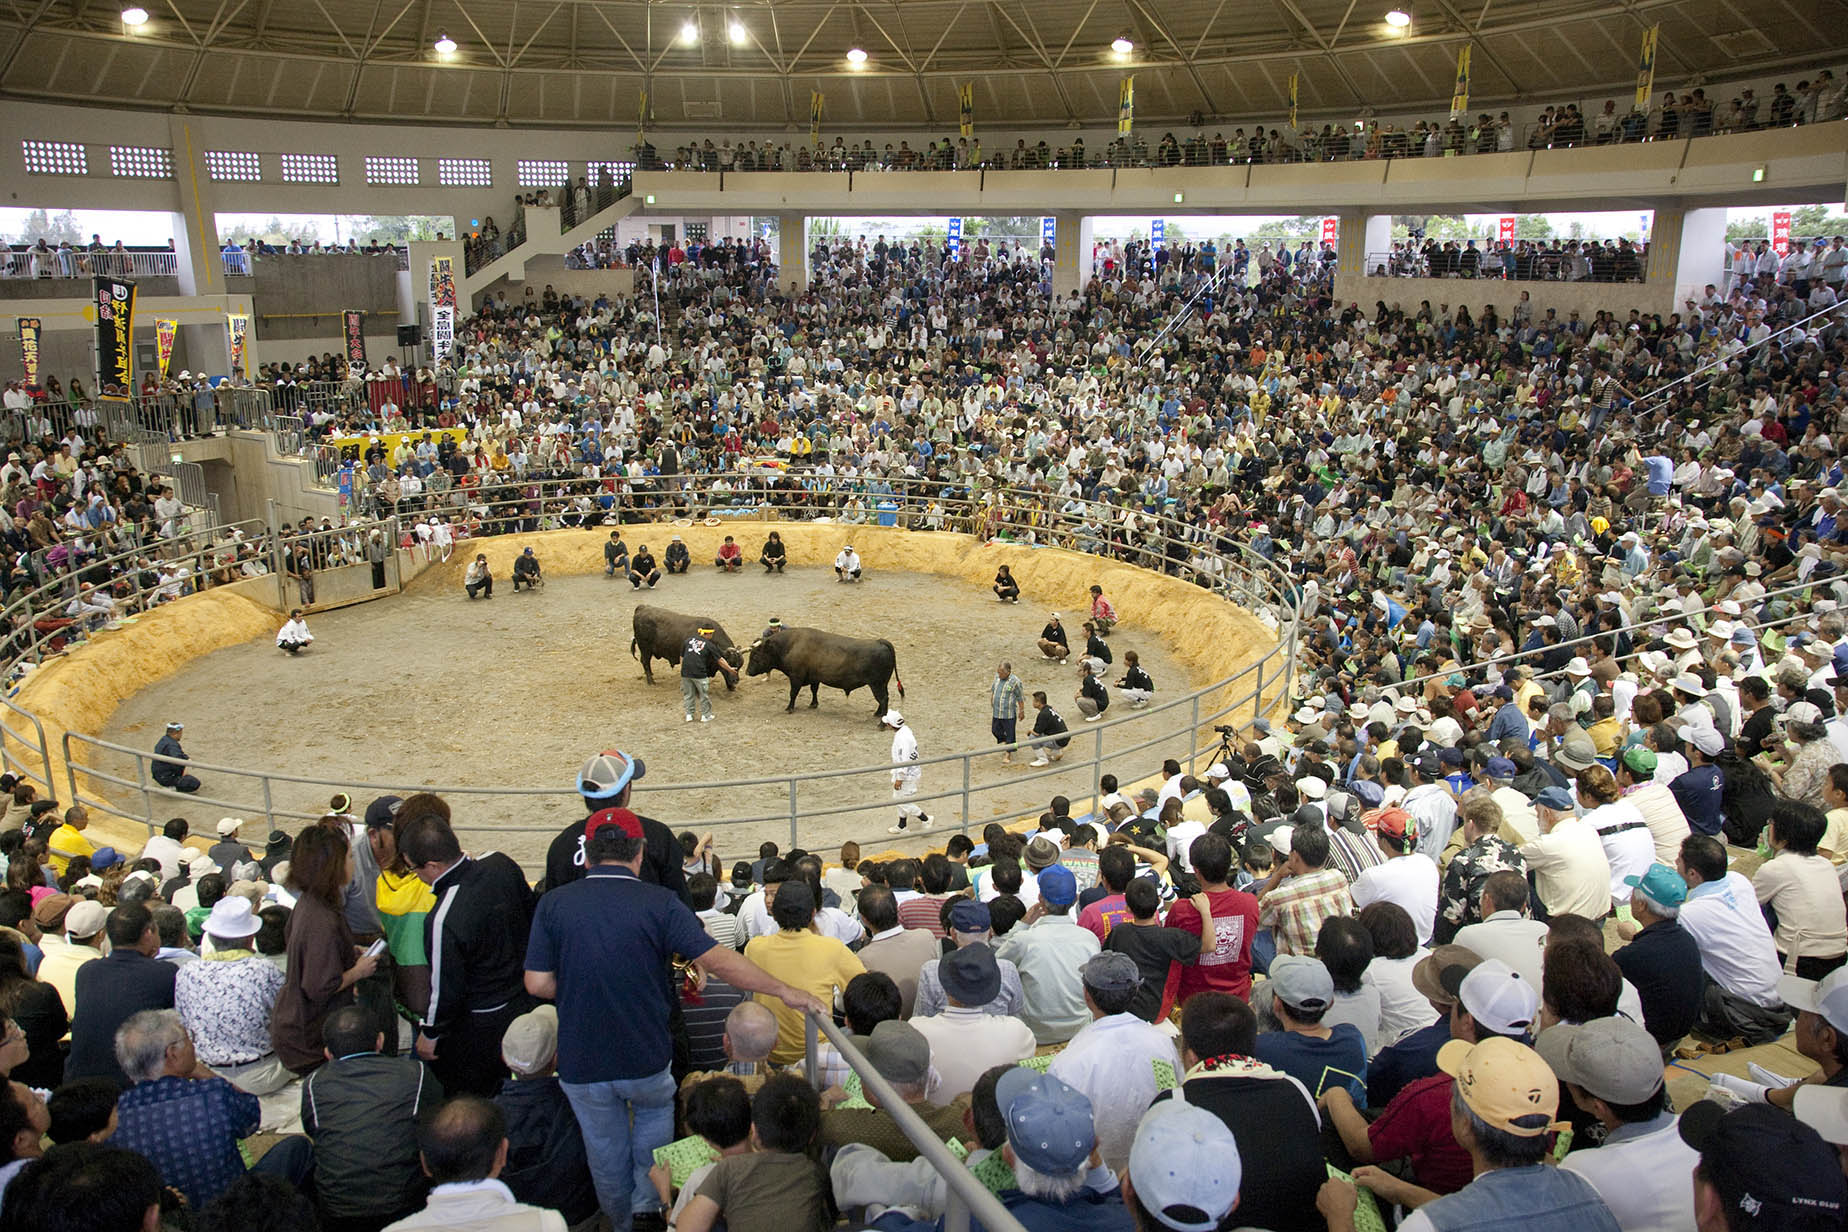 bullfighting-match-view